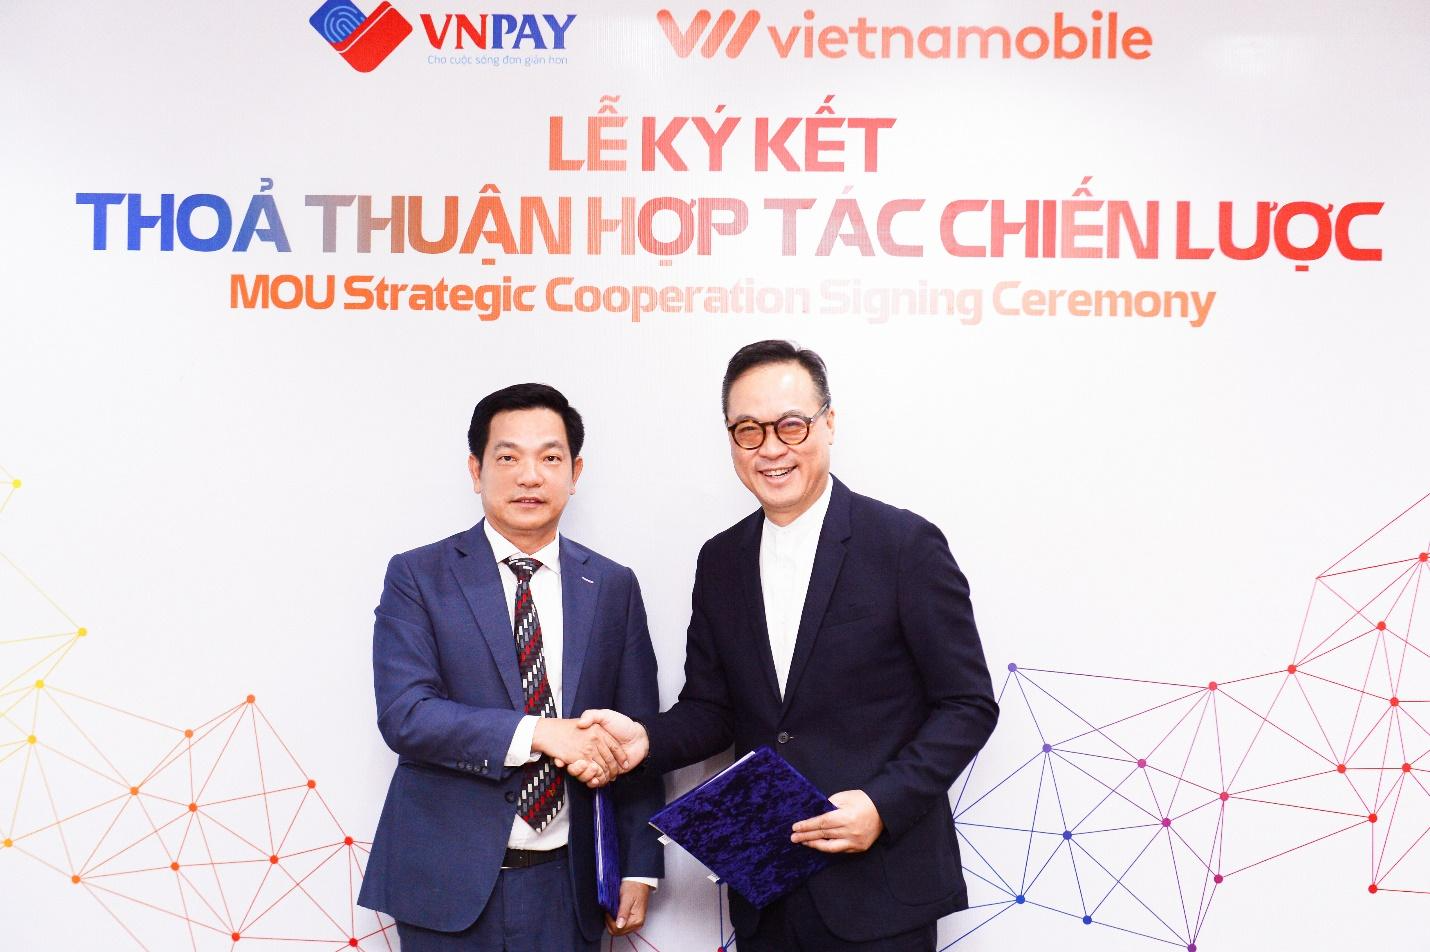 Vietnammobile VNPAY ký kết thỏa thuận hợp tác chiến lược